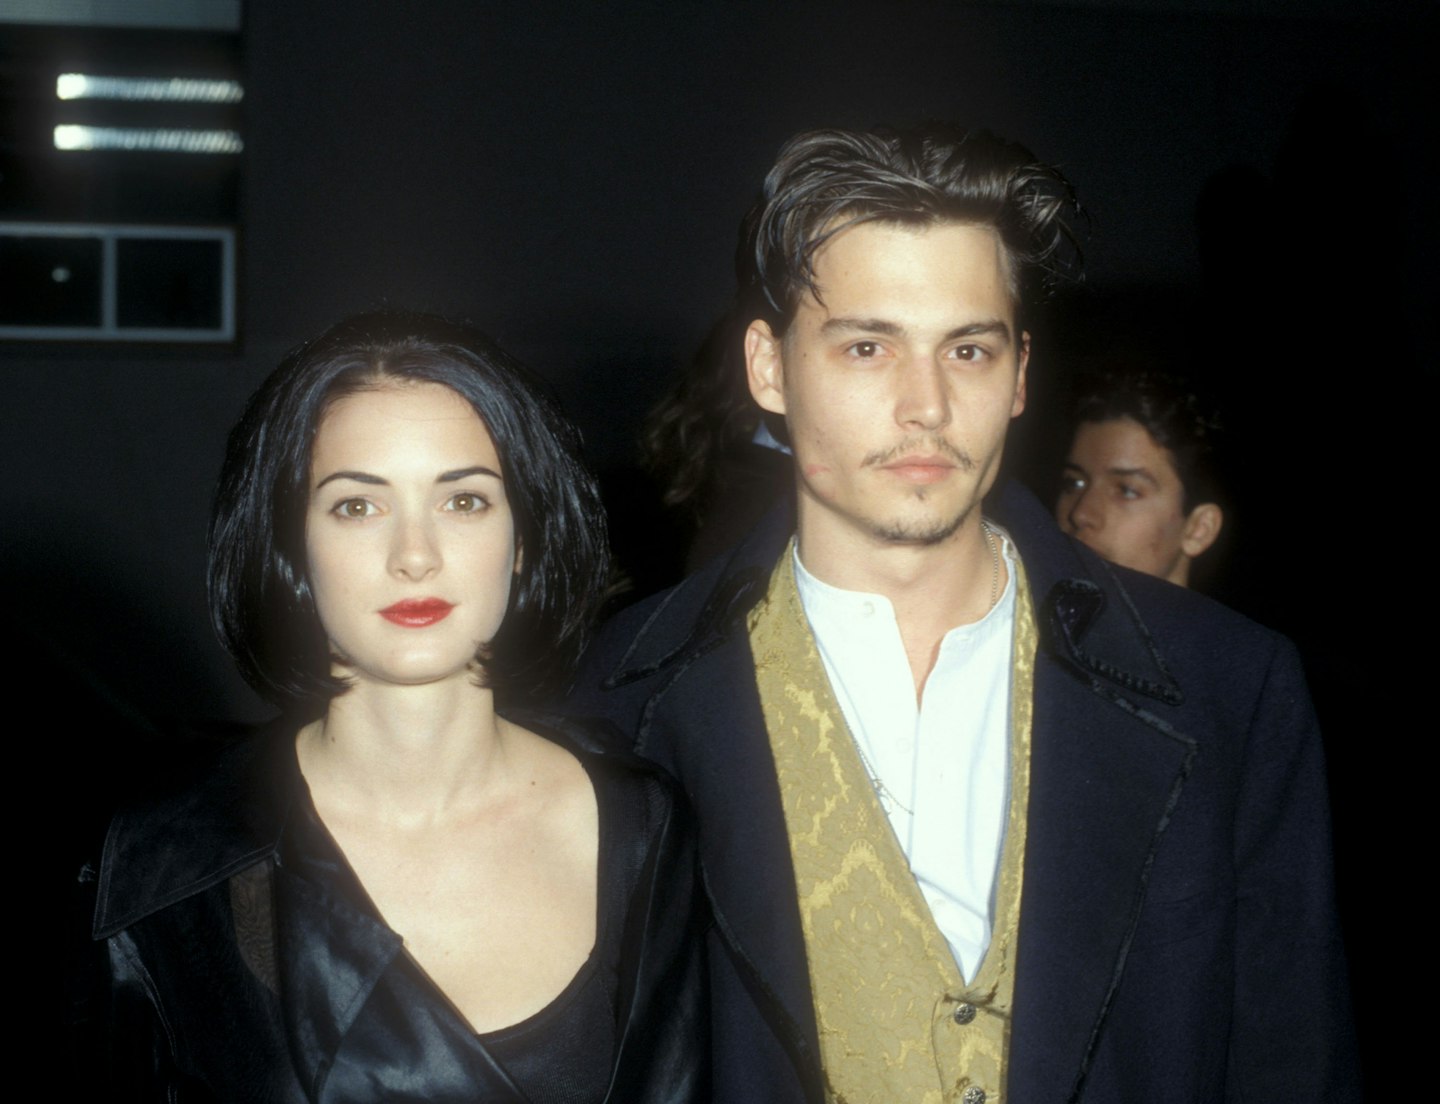 1989 – Winona Ryder and Johnny Depp